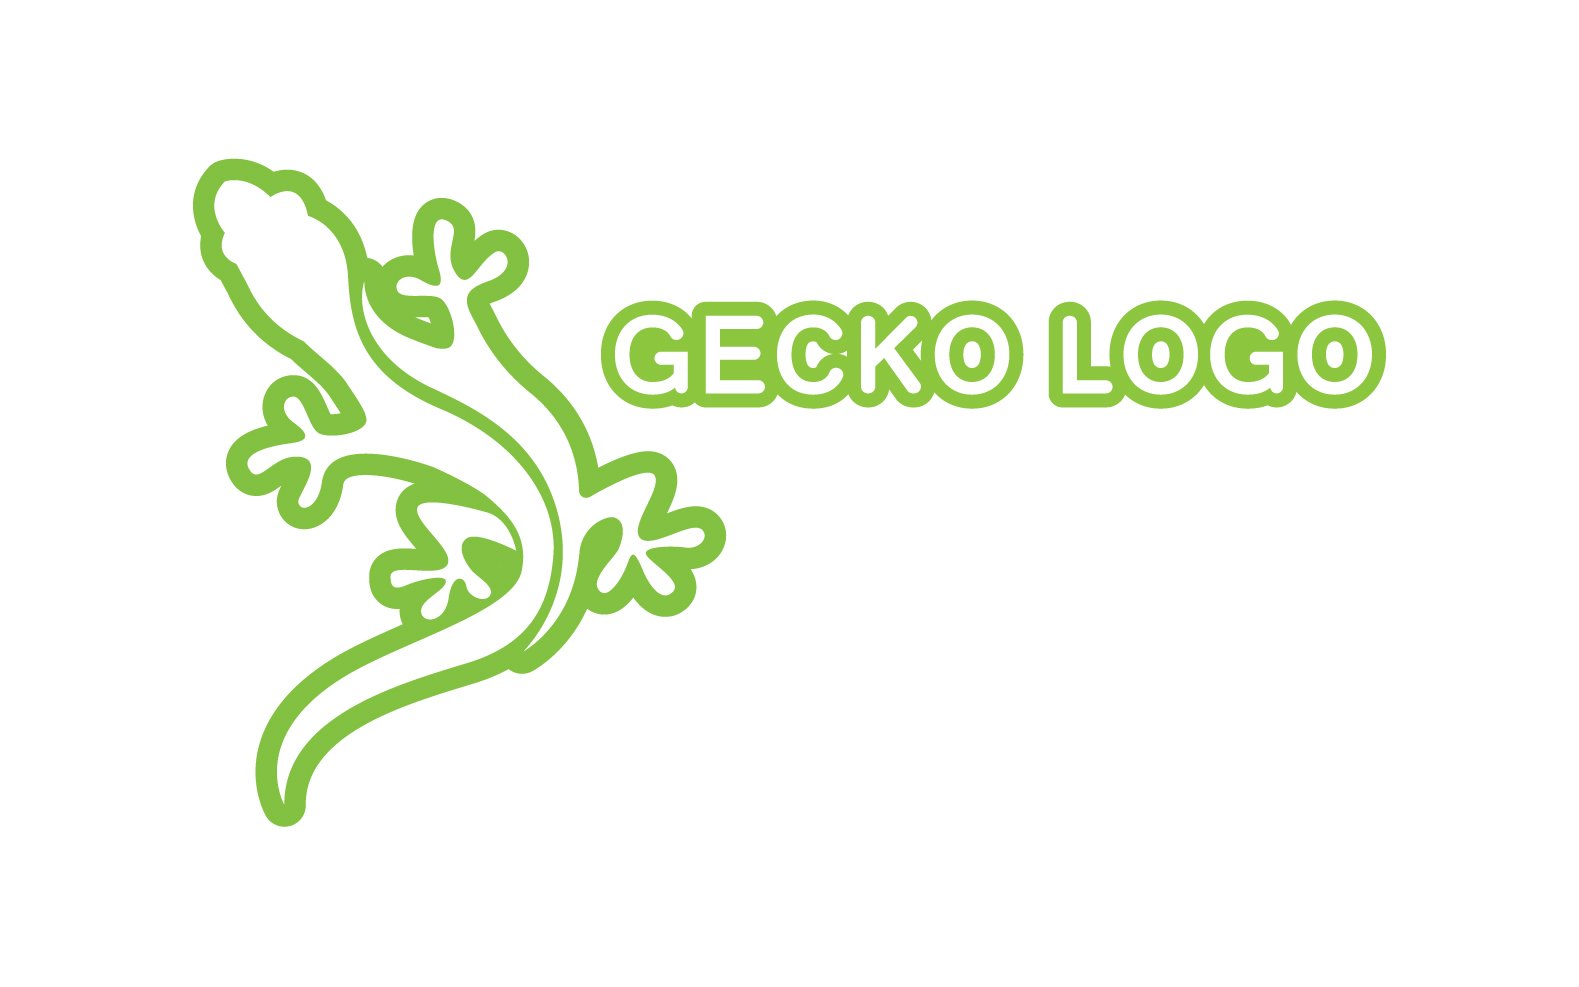 Kit Graphique #324517 Logo Gecko Divers Modles Web - Logo template Preview